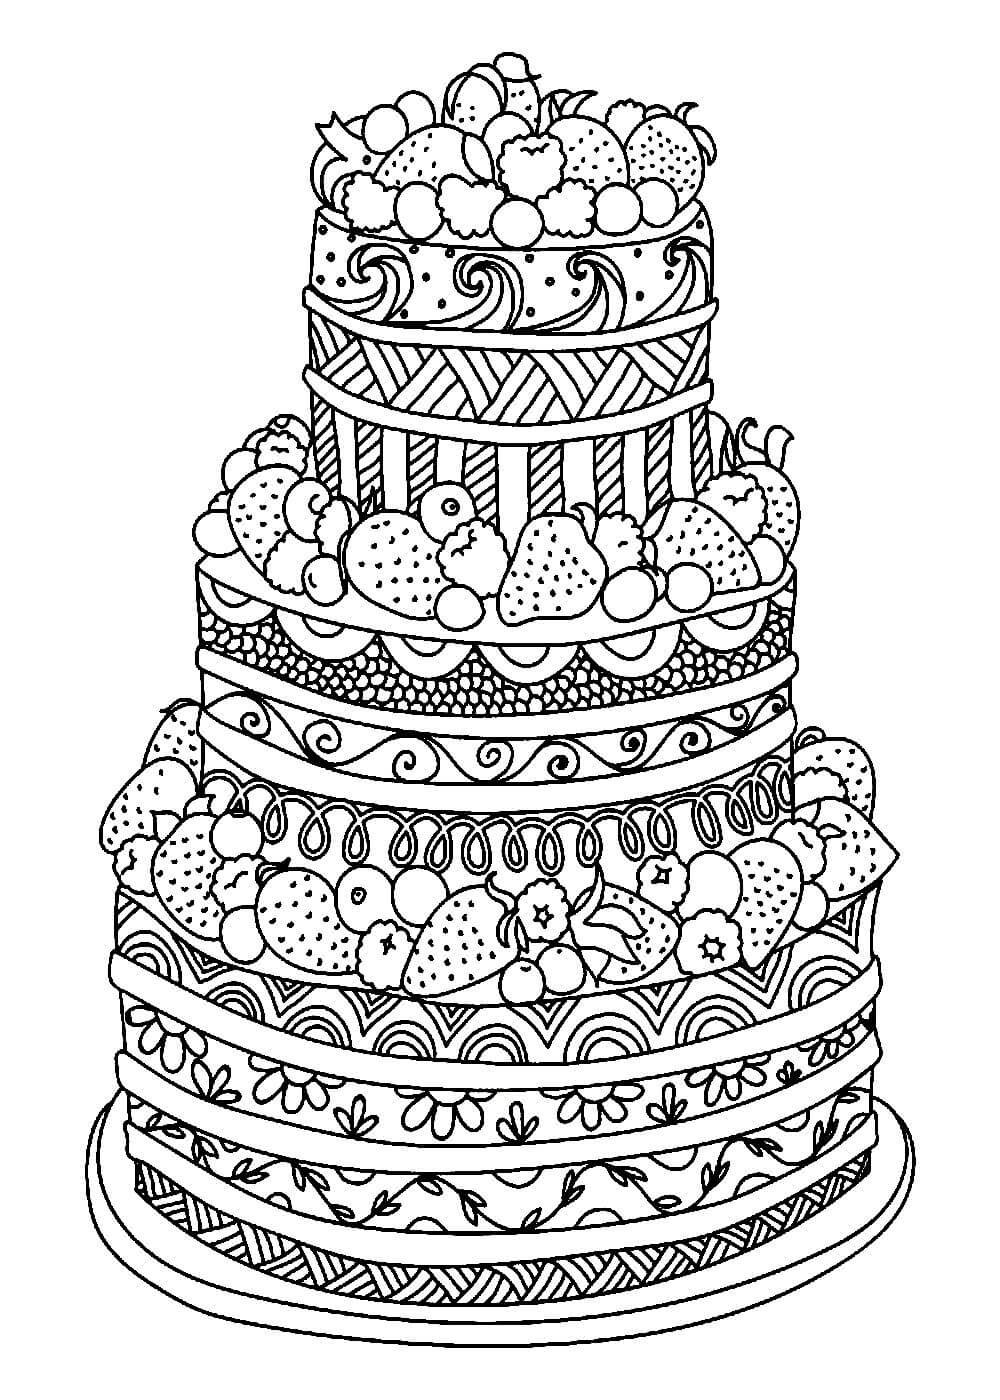 Как нарисовать торт просто и легко: техника рисования многоярусных и простых тортов